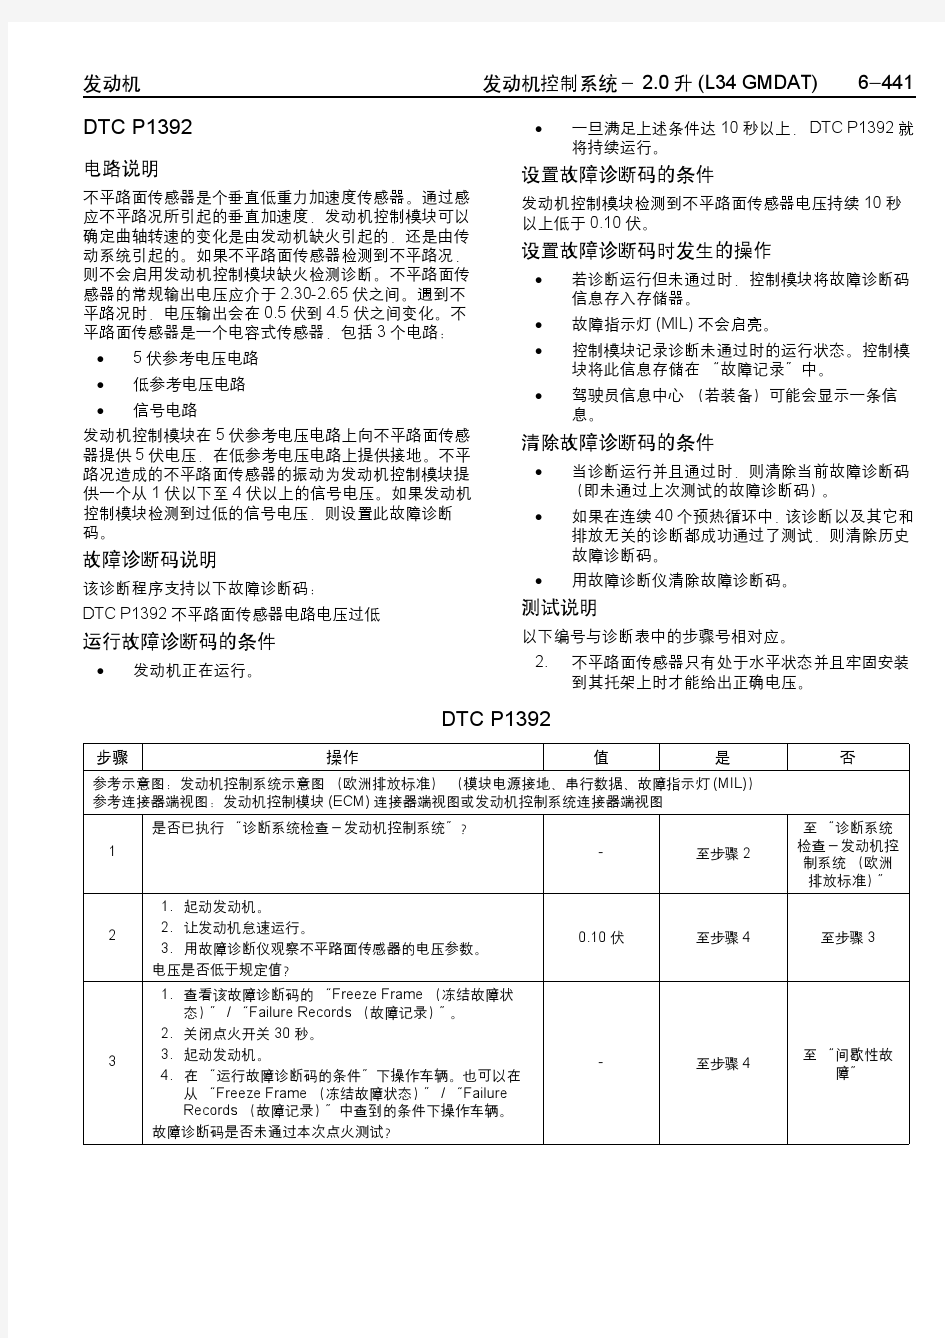 某汽车品牌汽车(上海通用2005 V-Car)维修手册(中)